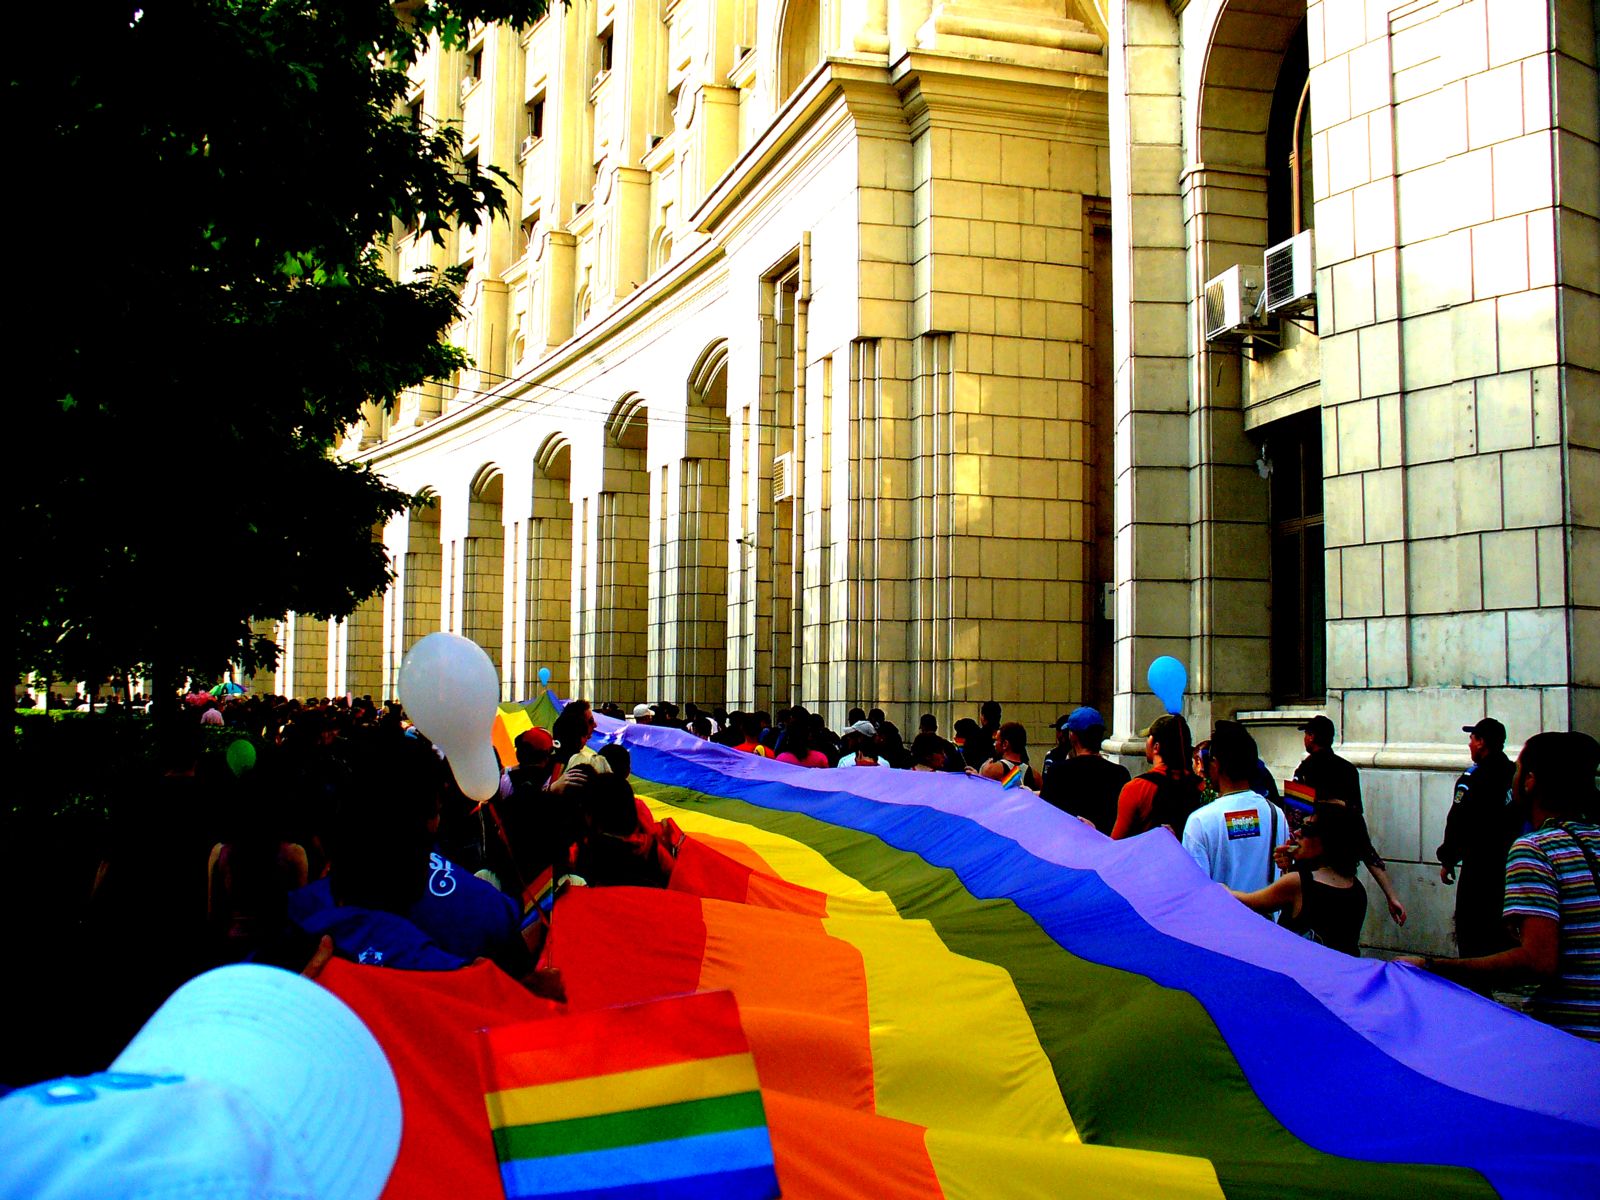 Un caso histórico en Rumania amplía las posibilidades para los derechos LGBT